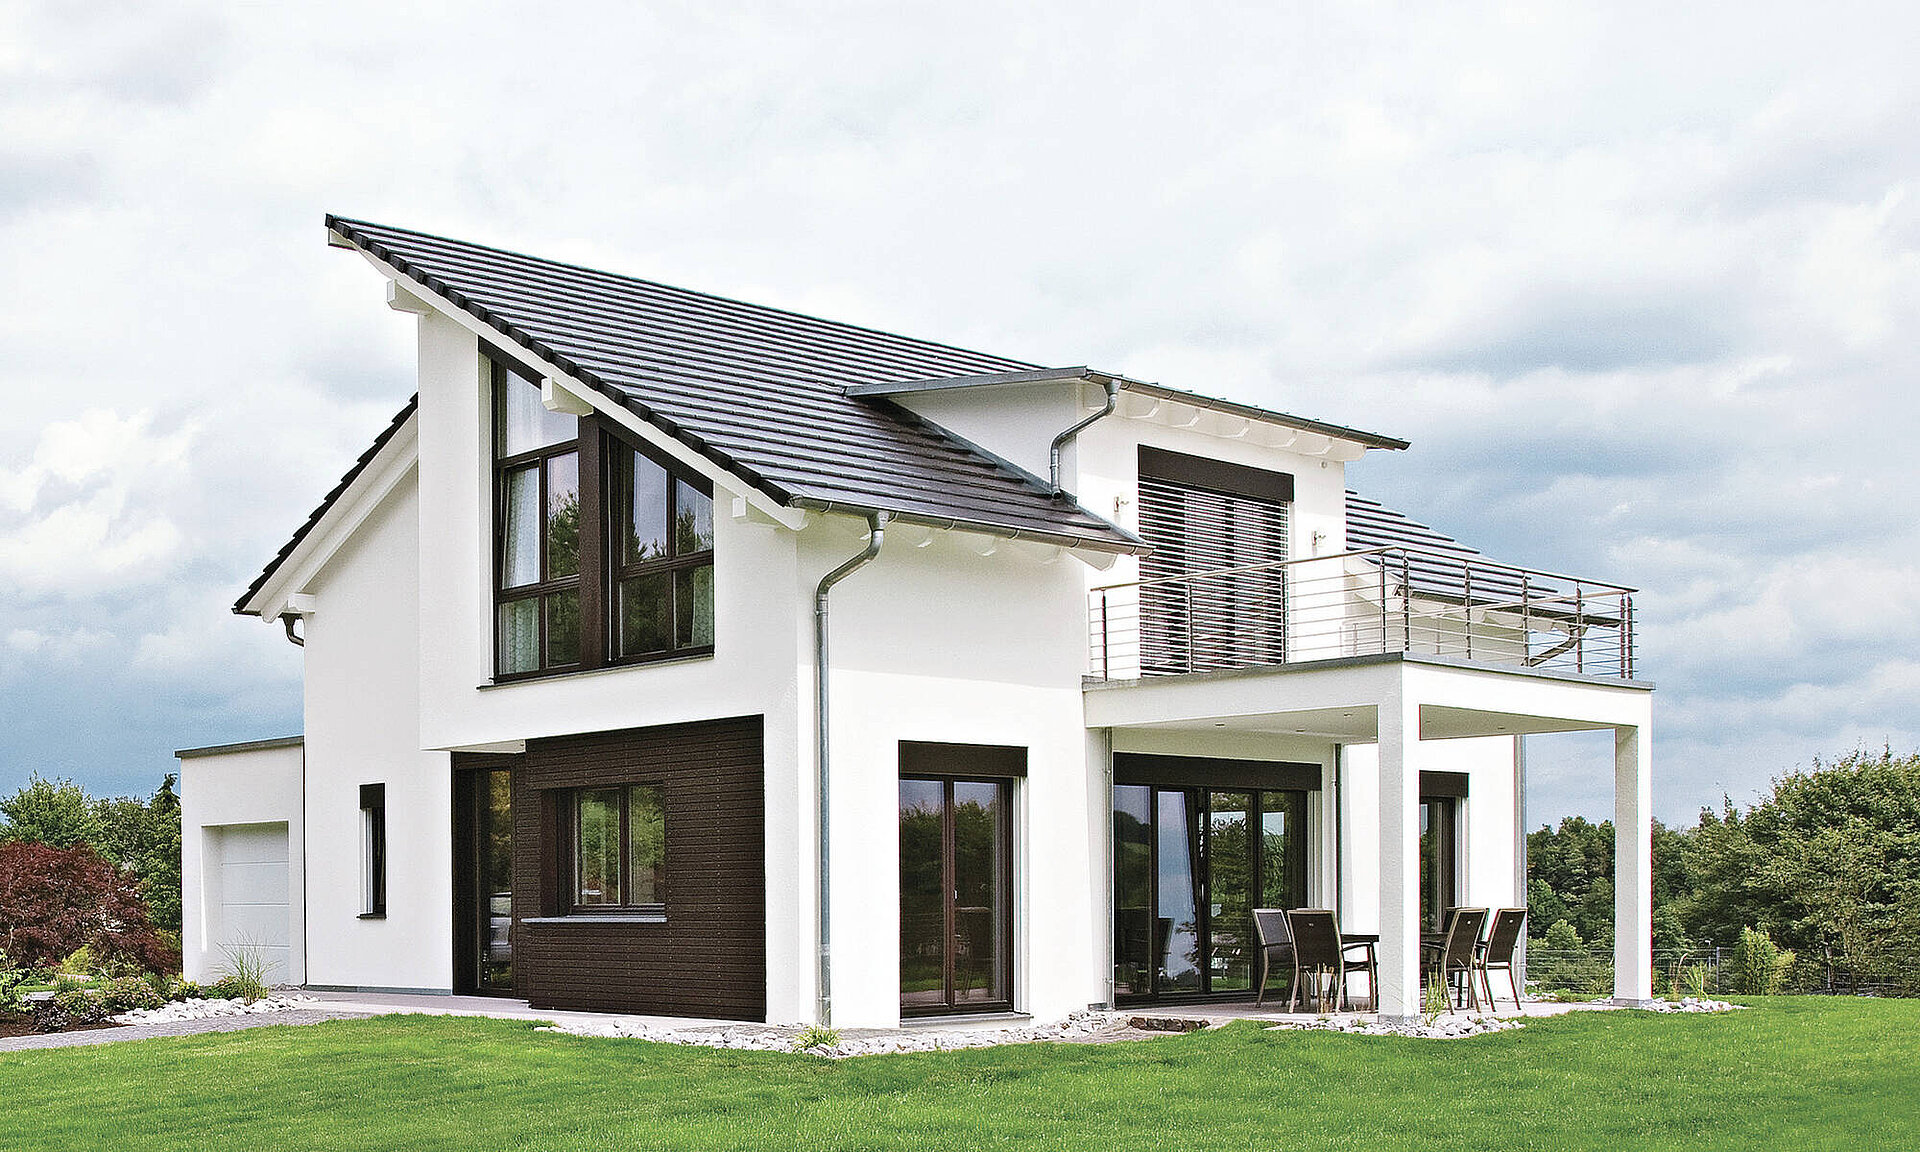 Der eineinhalb-geschossige Entwurf mit versetztem Pultdach macht das Haus zu einem besonderen Blickfang.